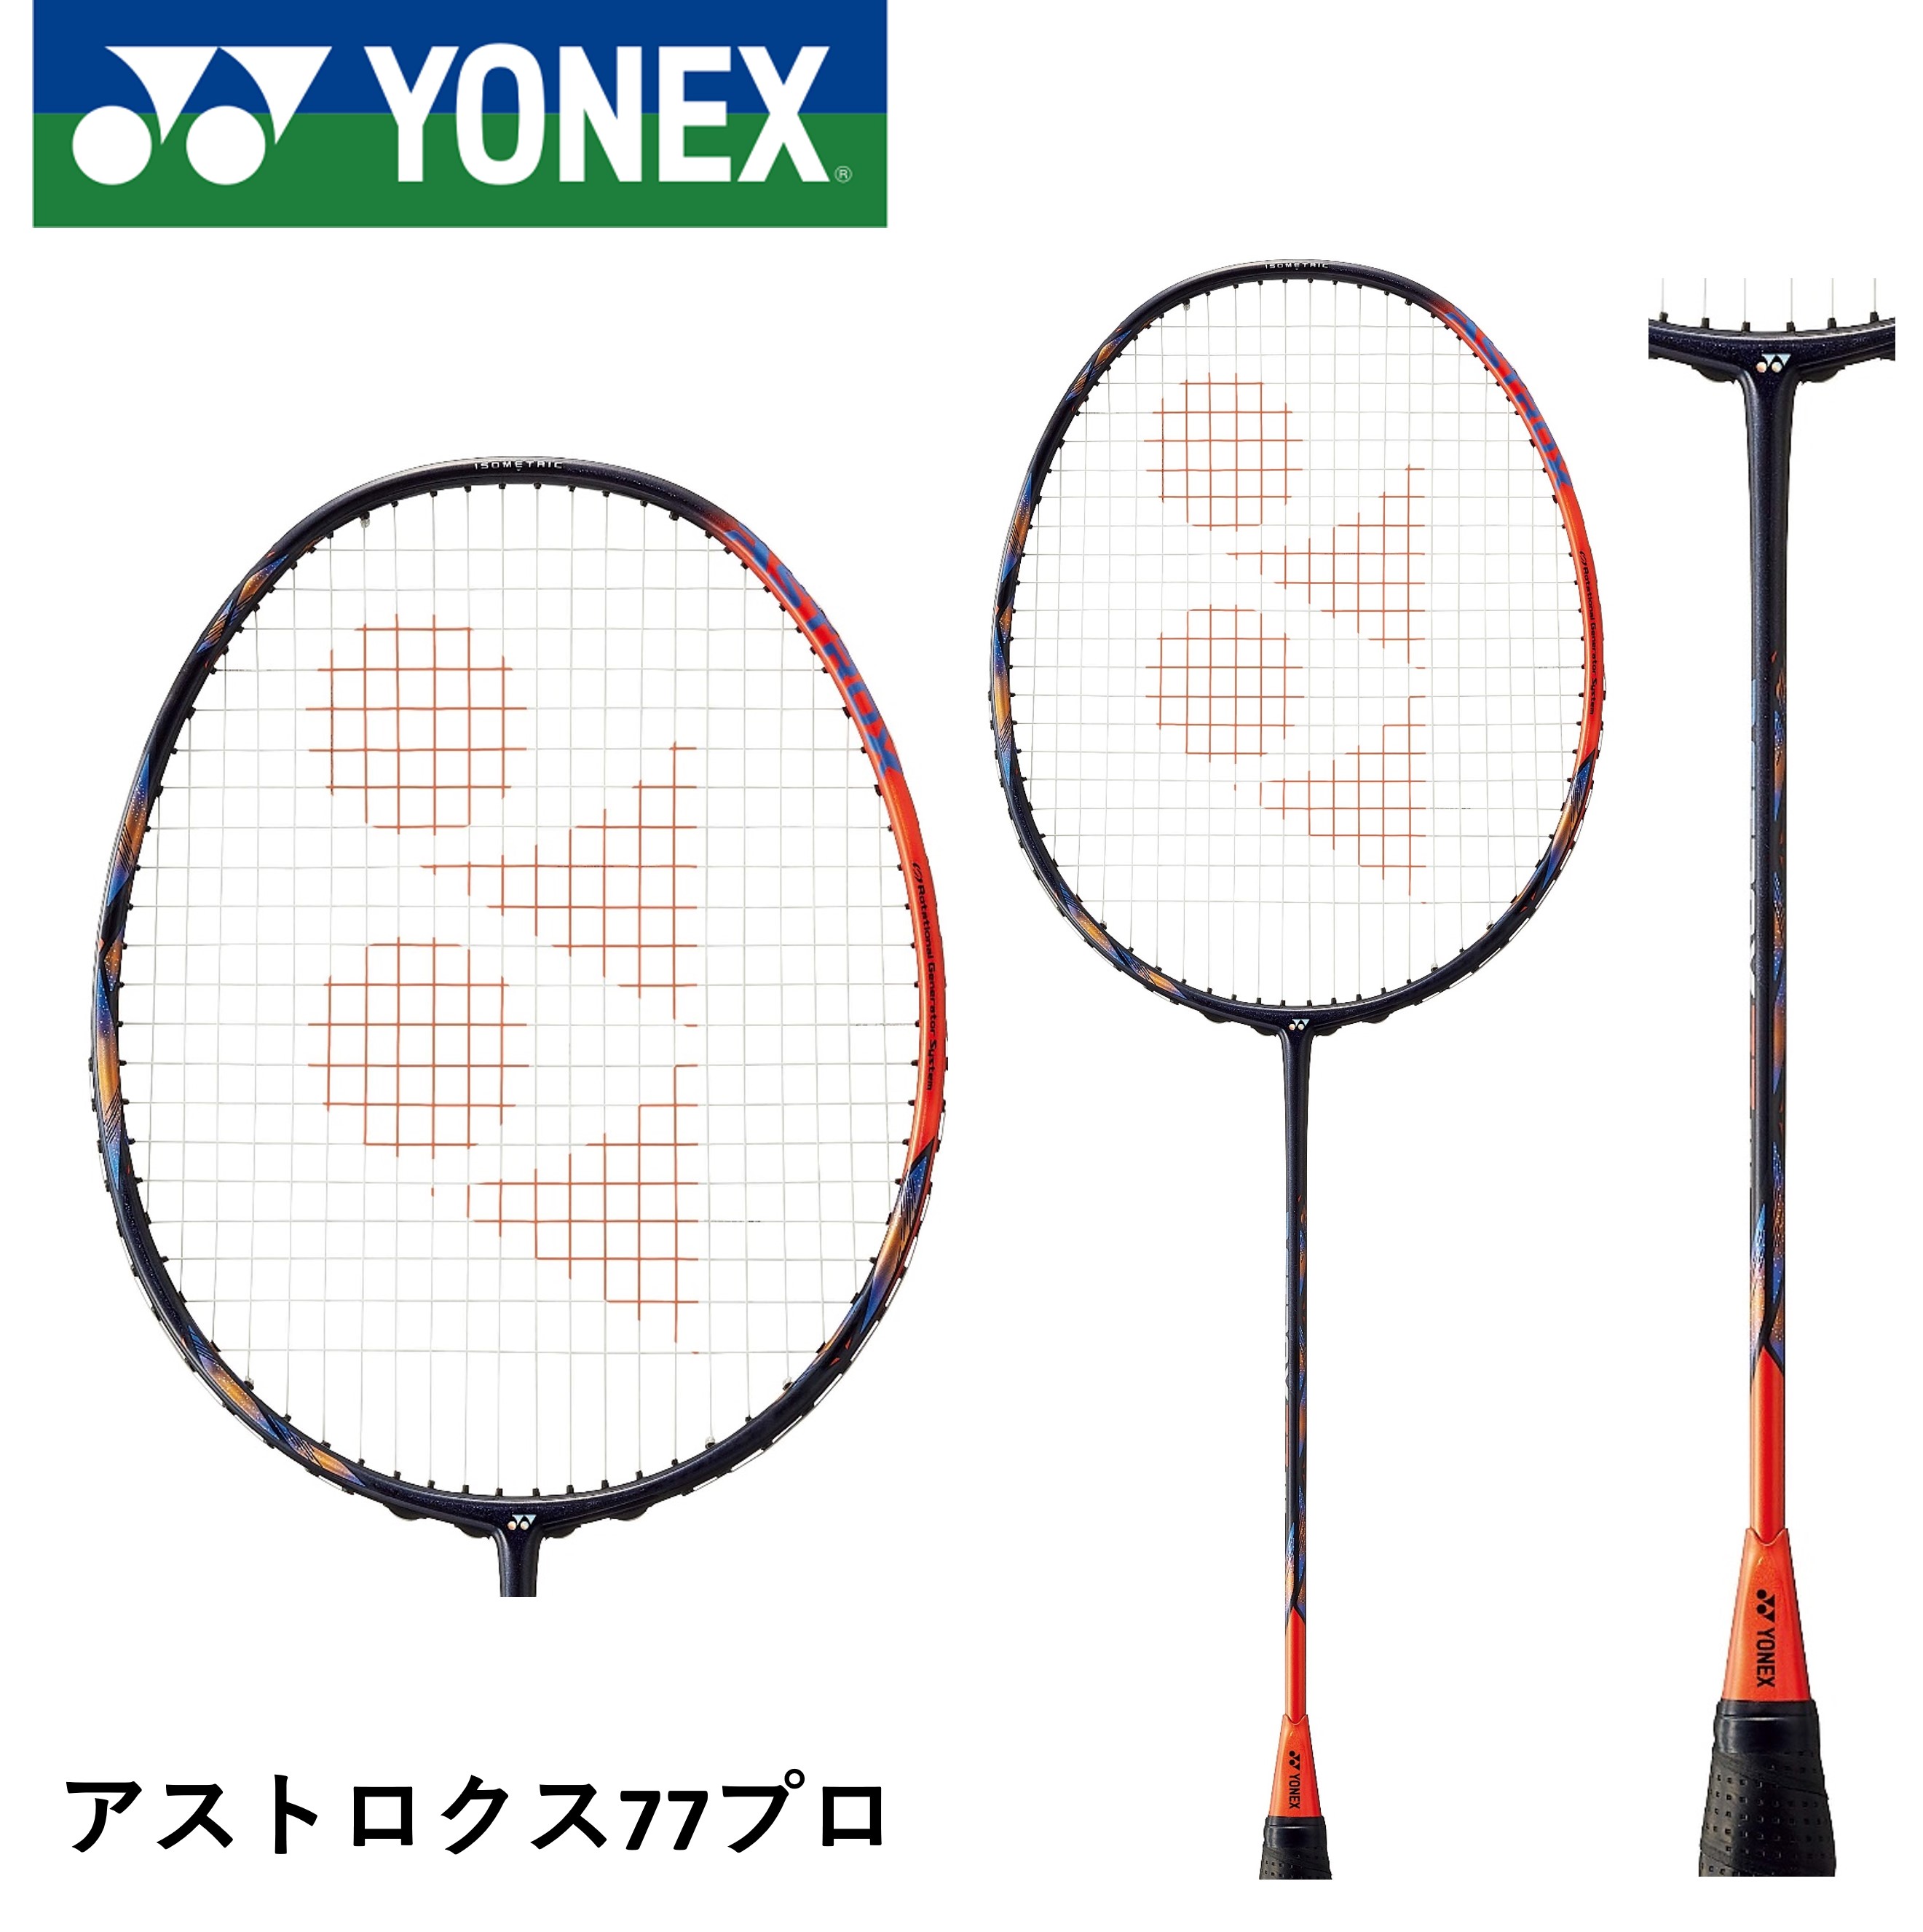 【ガット代・張り代無料】YONEX ヨネックス バドミントンラケット アストロクス77プロ AX77-P